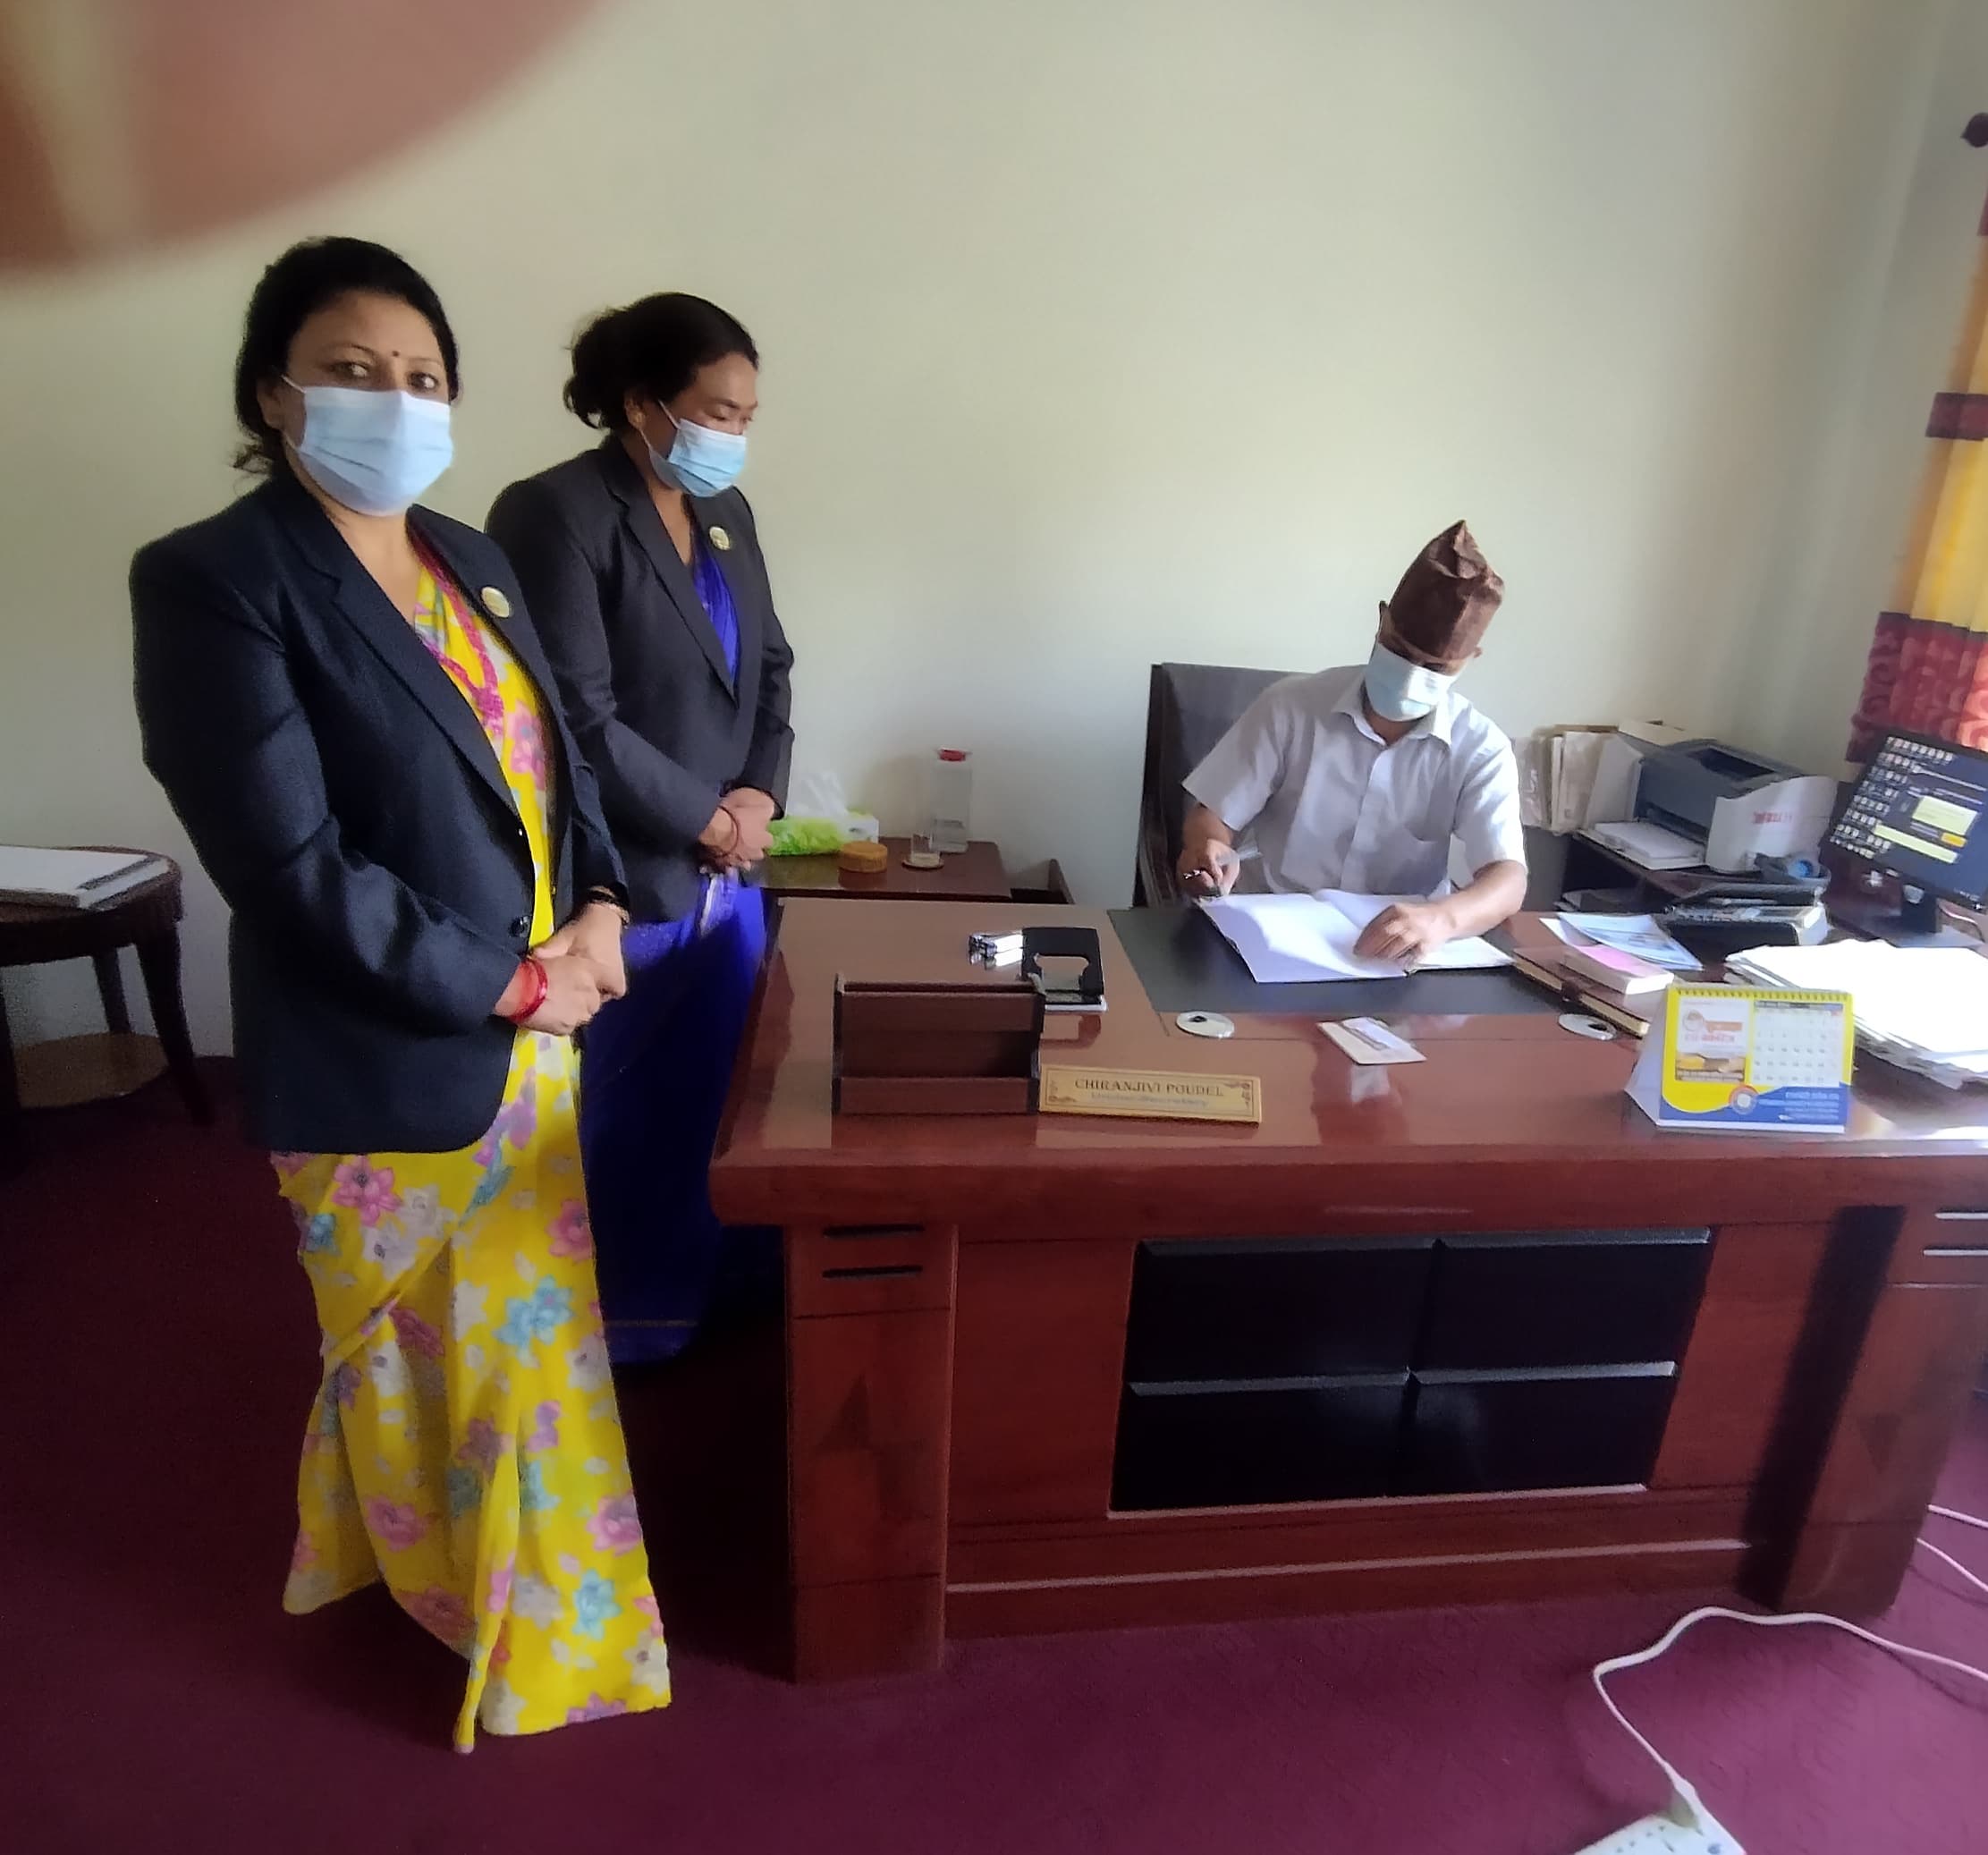 लुम्बिनी : विपक्षी‍ले माग्यो मुख्यमन्त्रीको नियुक्तिदेखि सांसदको हस्ताक्षरसम्मका कागजपत्र